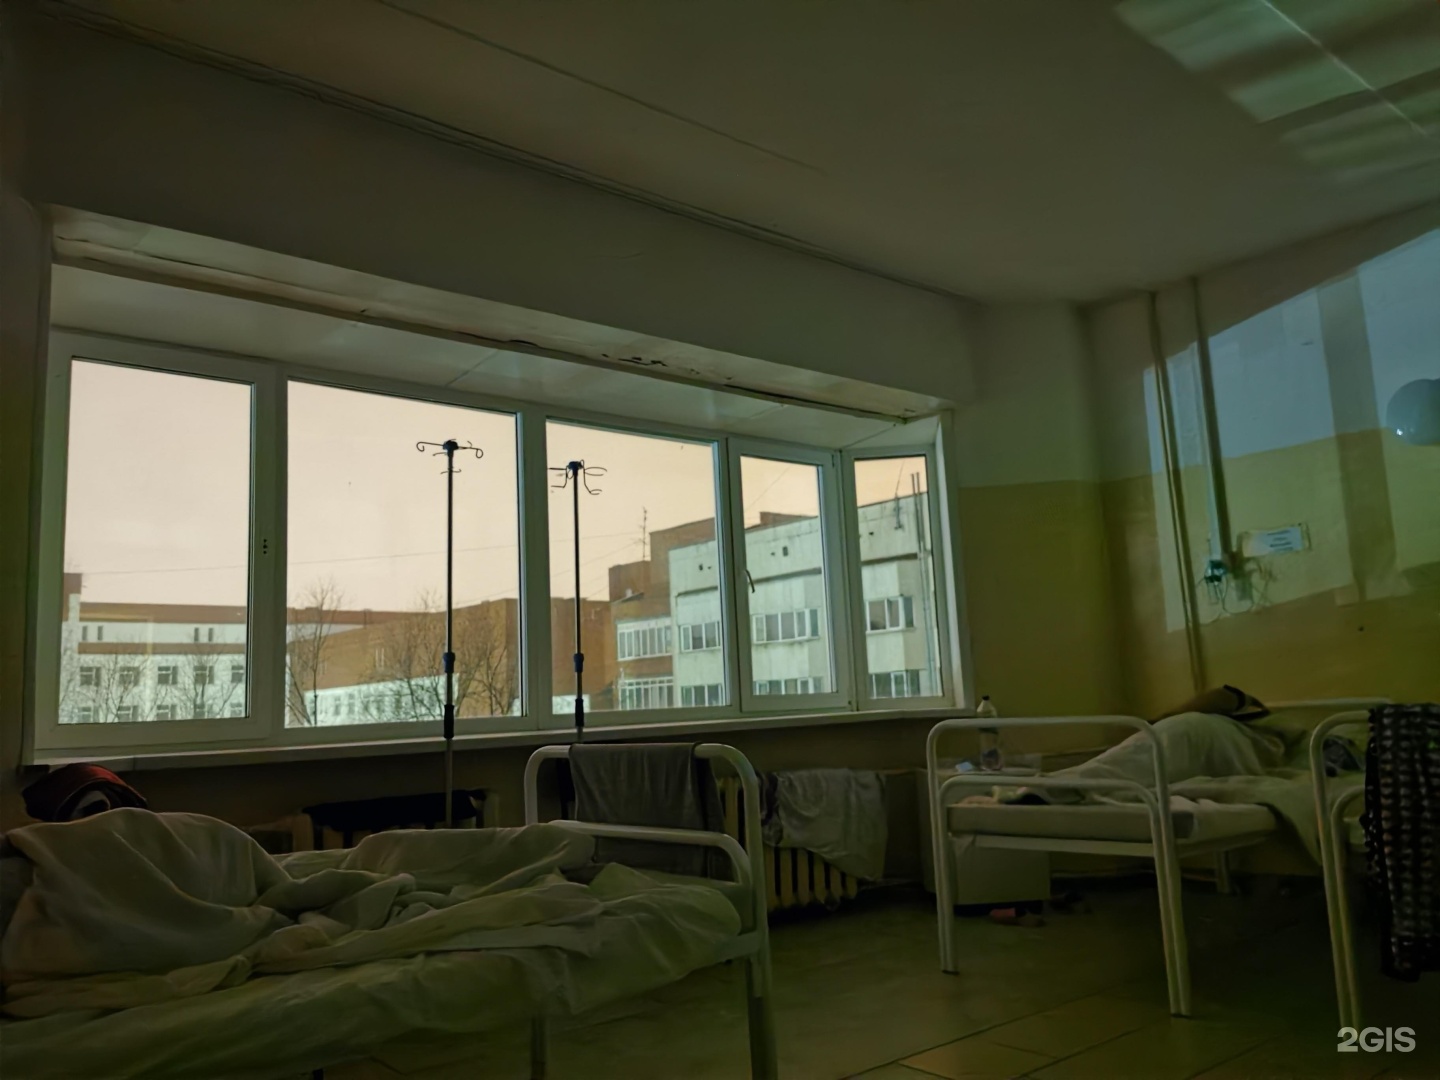 Госпиталь соболева 25 екатеринбург. Областной психоневрологический госпиталь для ветеранов войн.